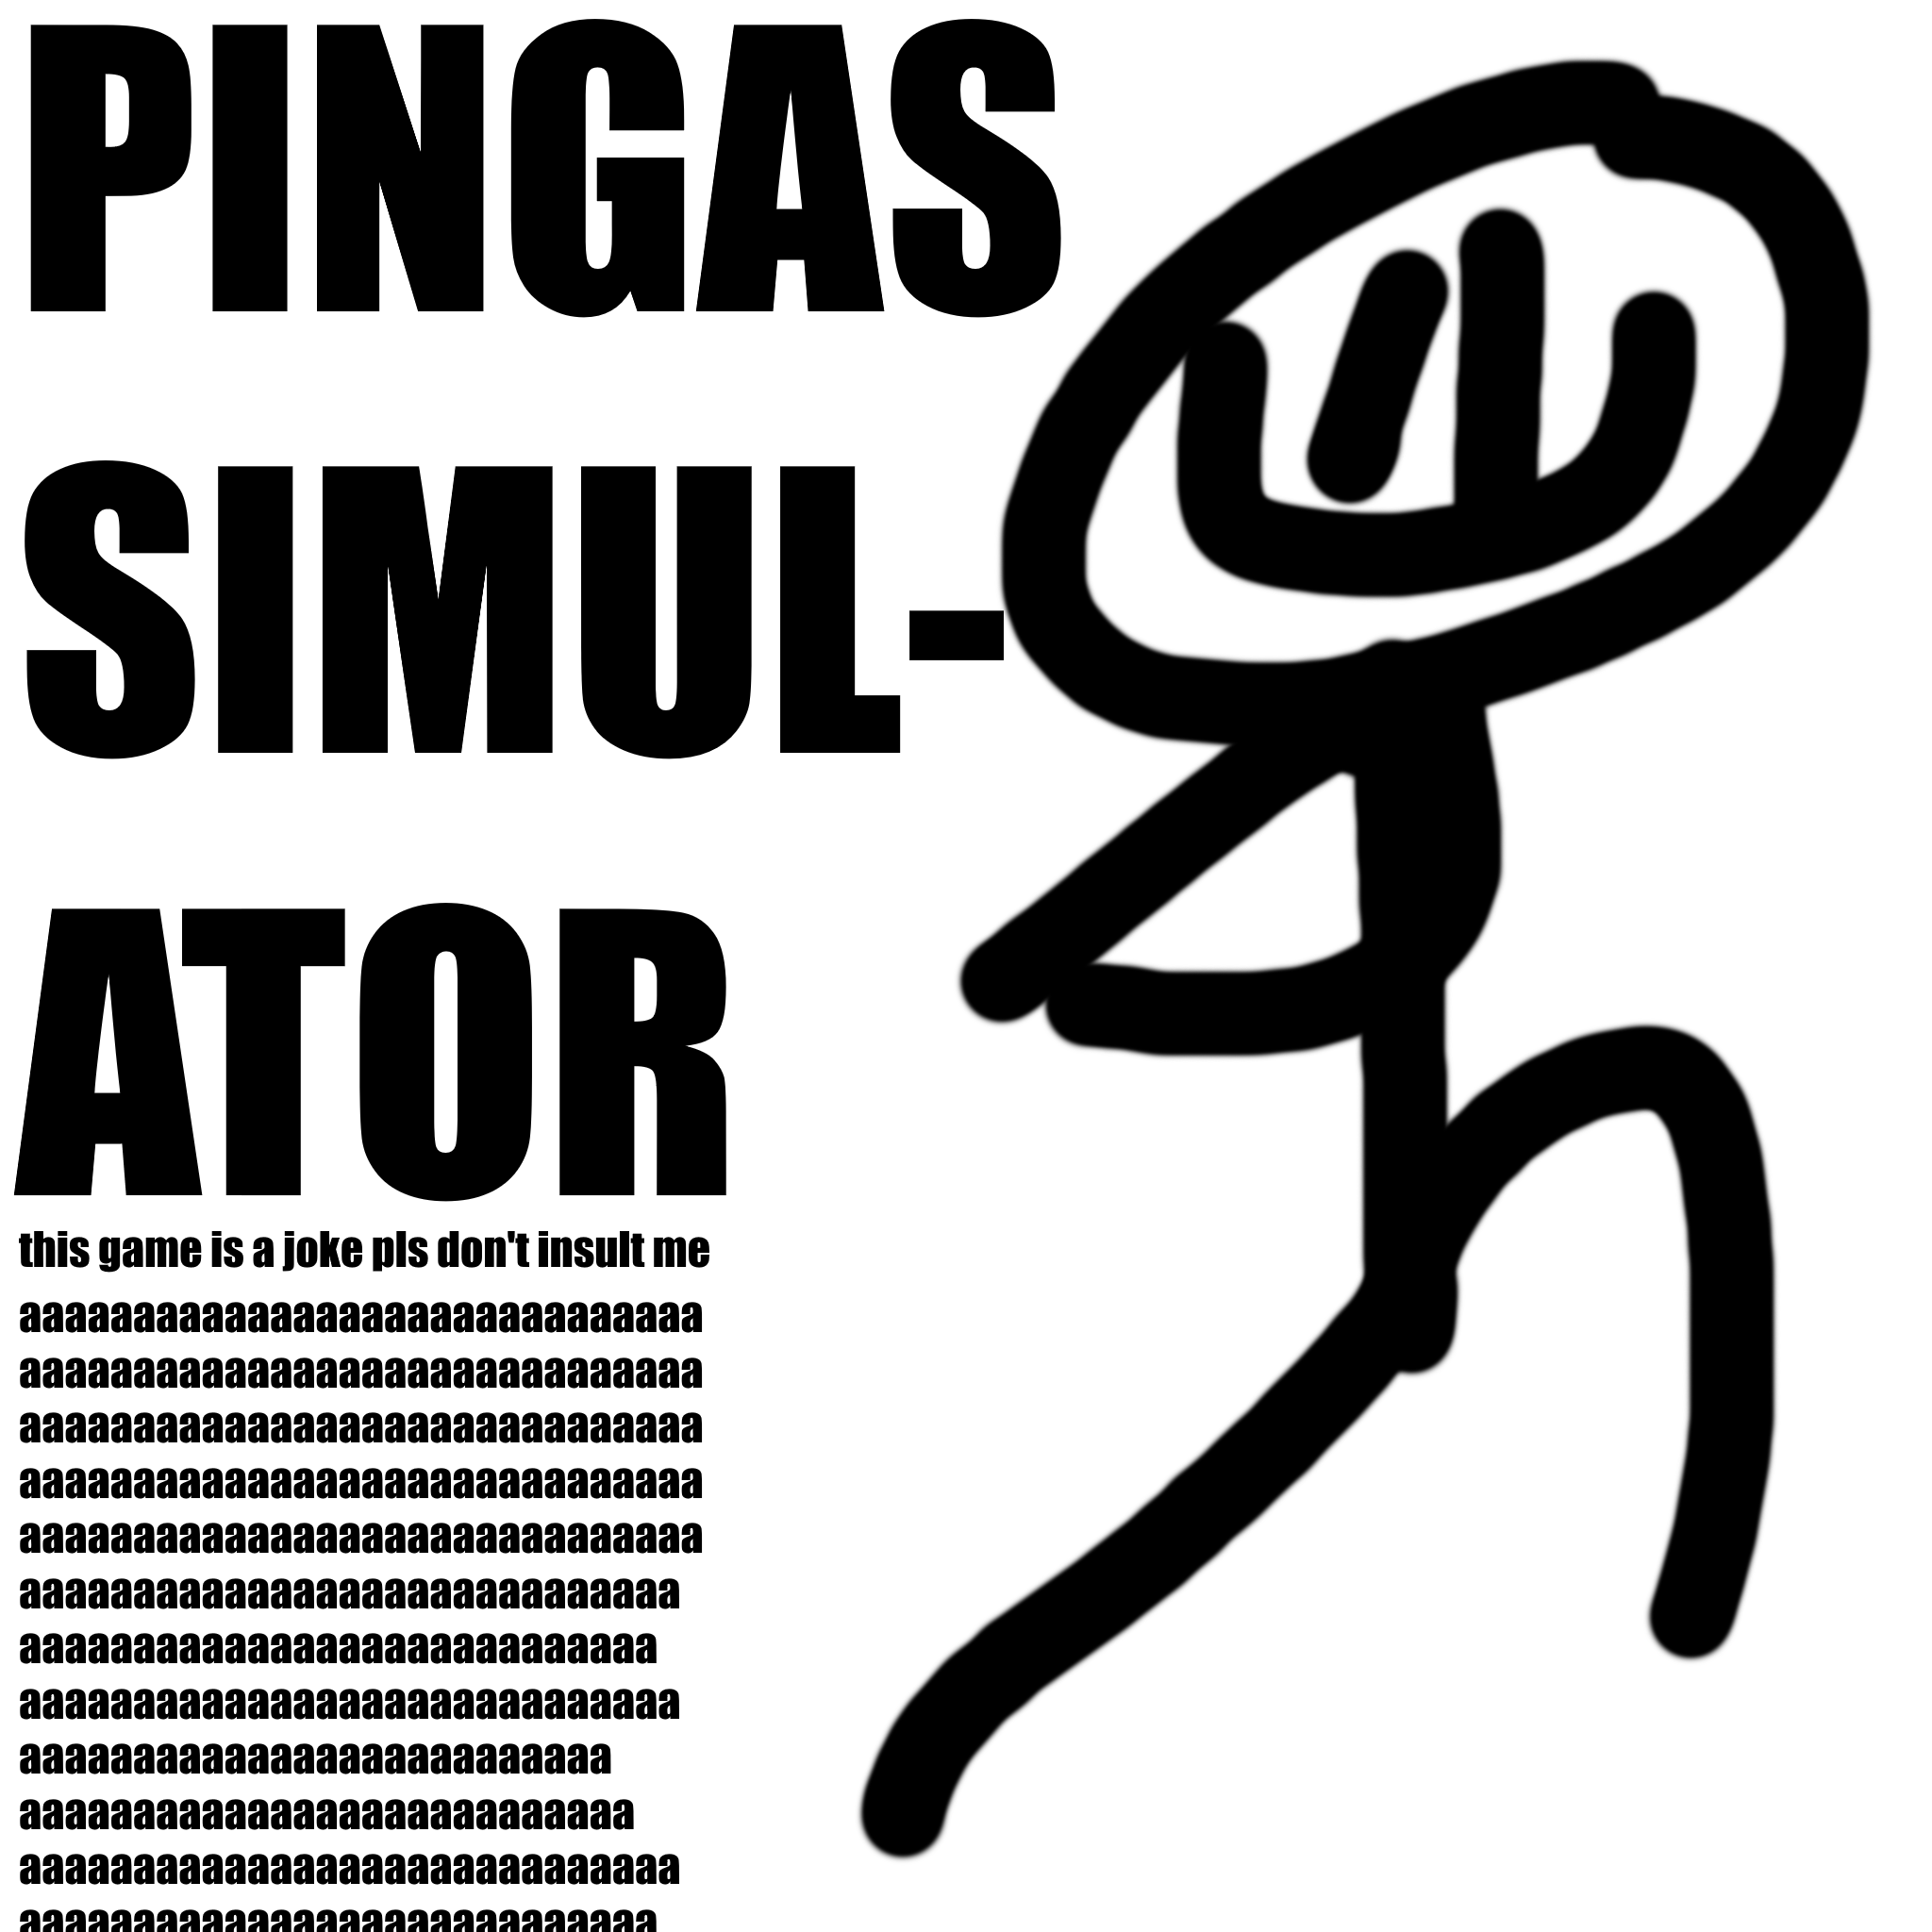 PINGAS SIMULATOR